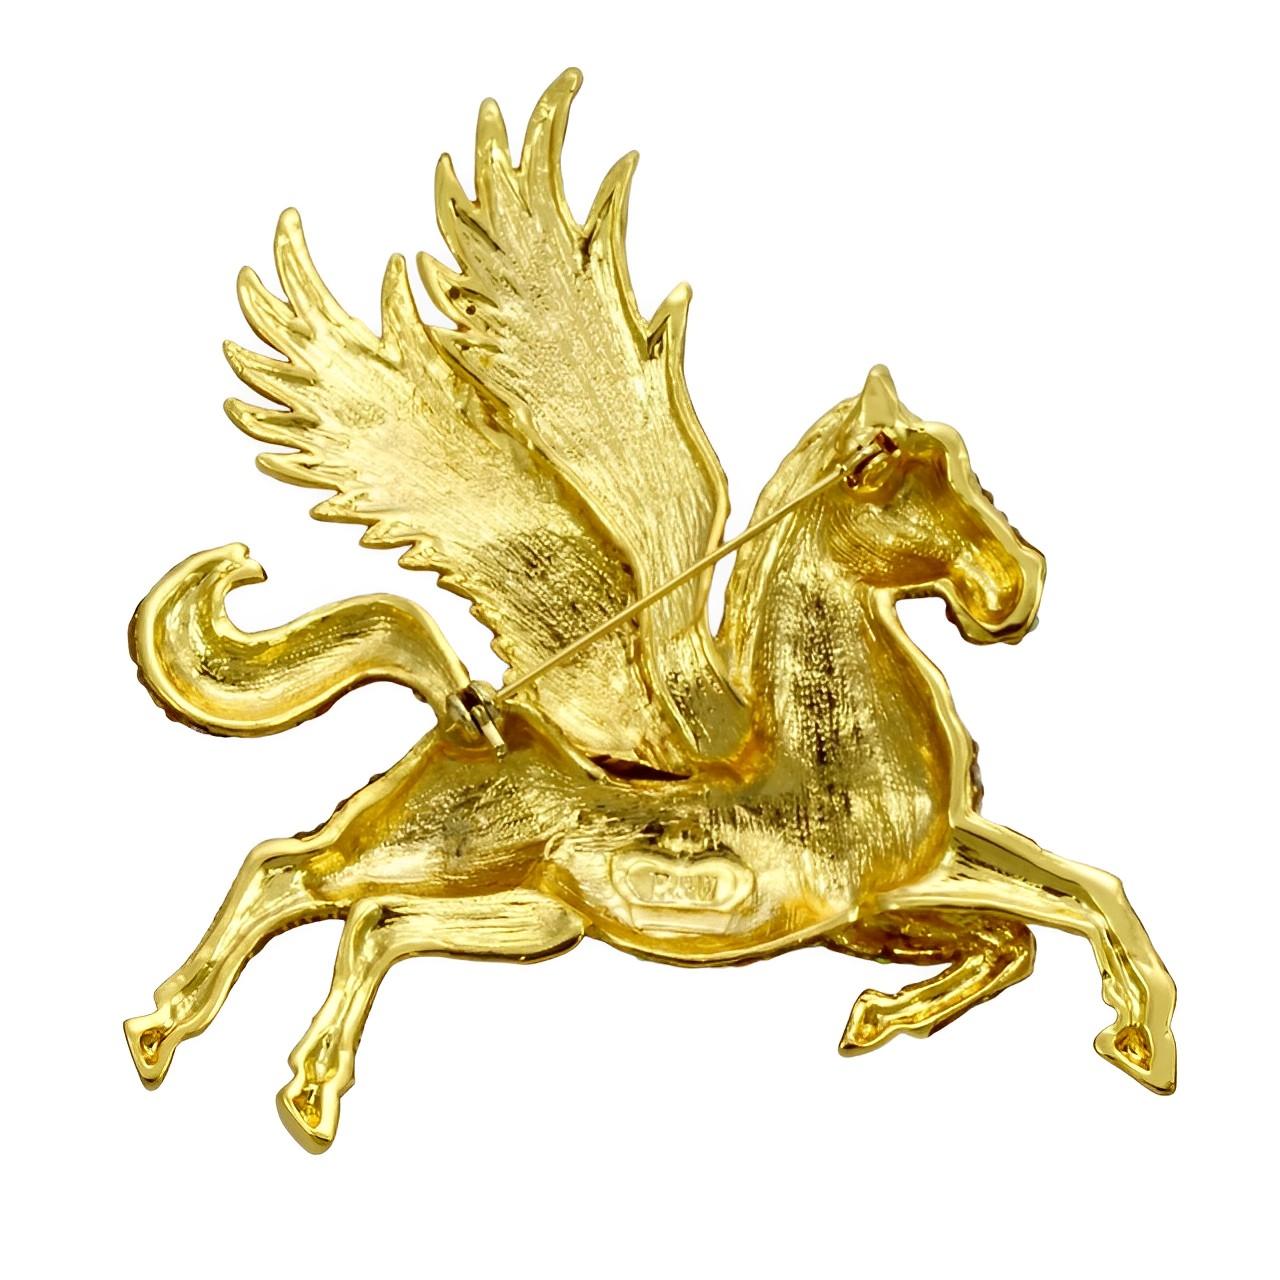 
Fabelhafte Butler & Wilson vergoldete Fantasy Pegasus Brosche mit goldenen Aurora Borealis Kristallen verziert. Er hat ein grünes Kristallauge. Maximale Breite 7,3 cm / 2,8 Inches bei maximaler Länge 8 cm / 3,1 Inches. Die Brosche ist in sehr gutem